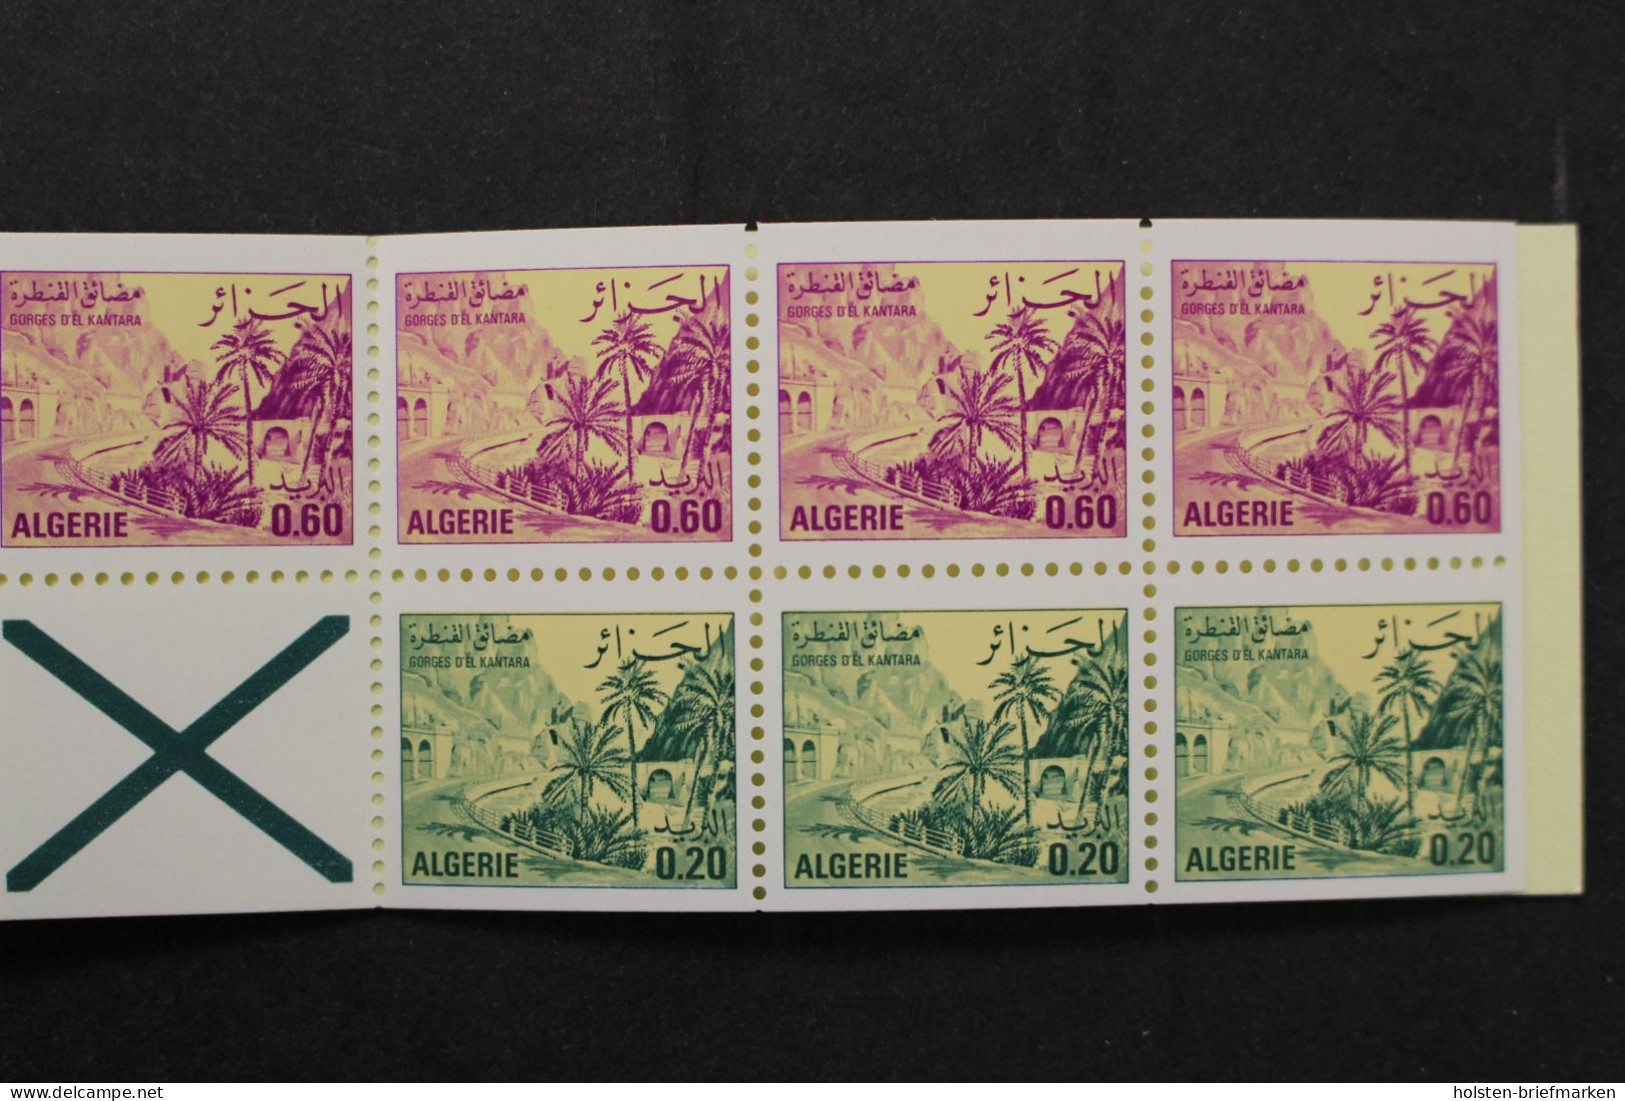 Algerien, MiNr. 695 + 696 Markenheftchen, Postfrisch - Algeria (1962-...)